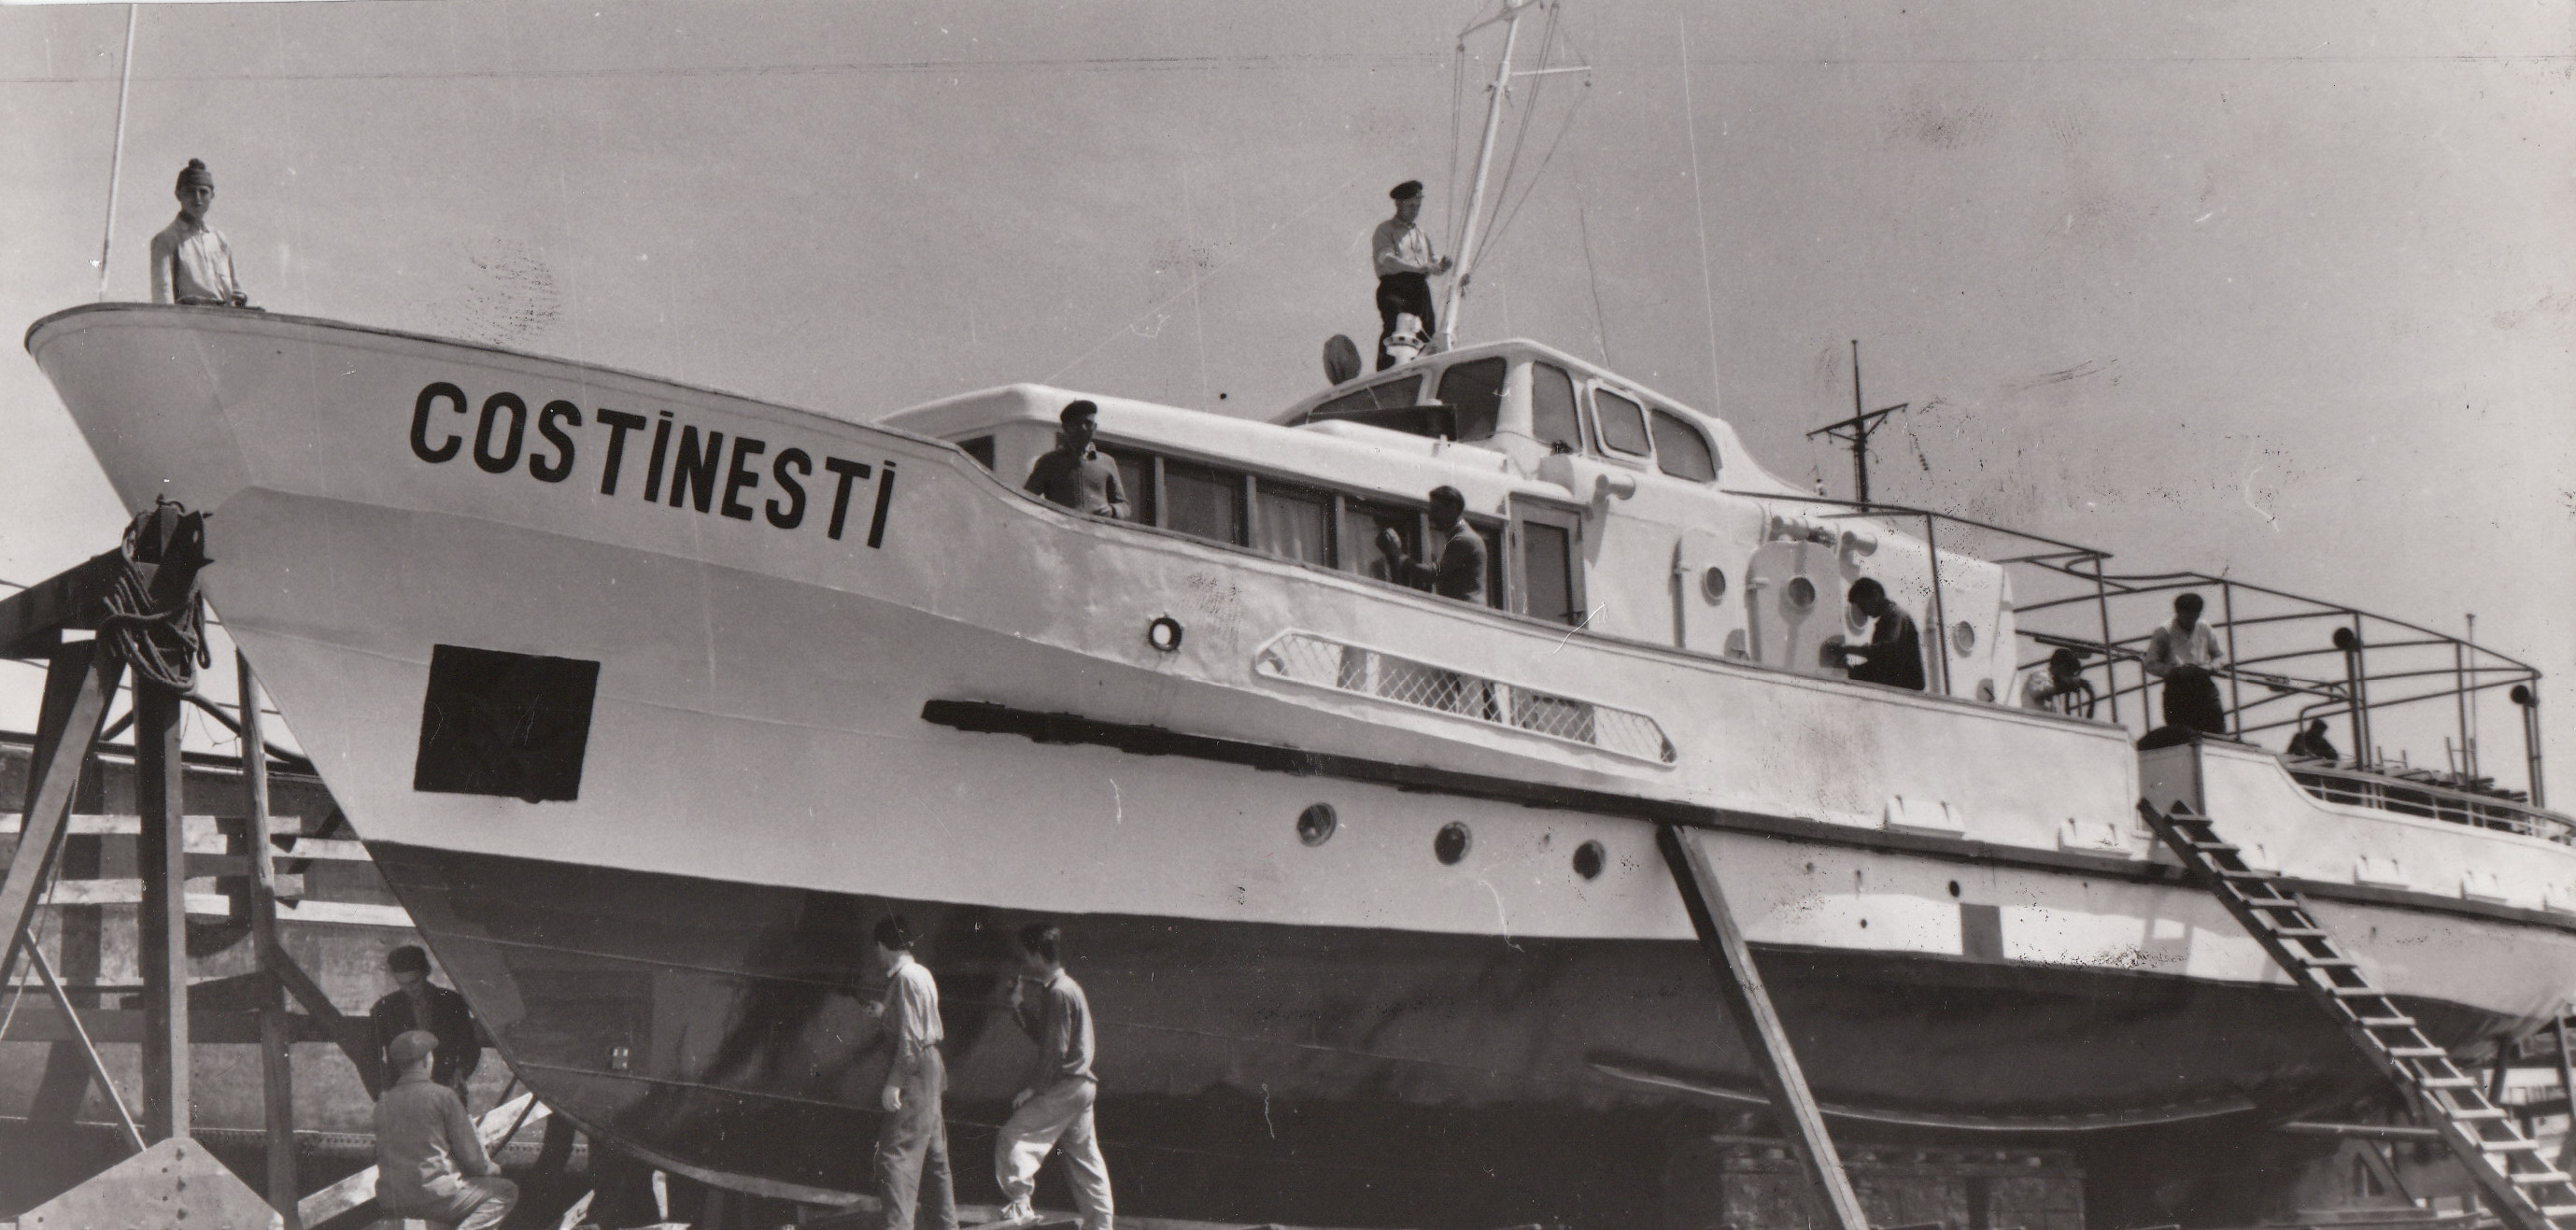 Hidrobuzul COSTINEȘTI în timpul reparațiilor din Șantierul Naval Constanța (foto din anii '60).